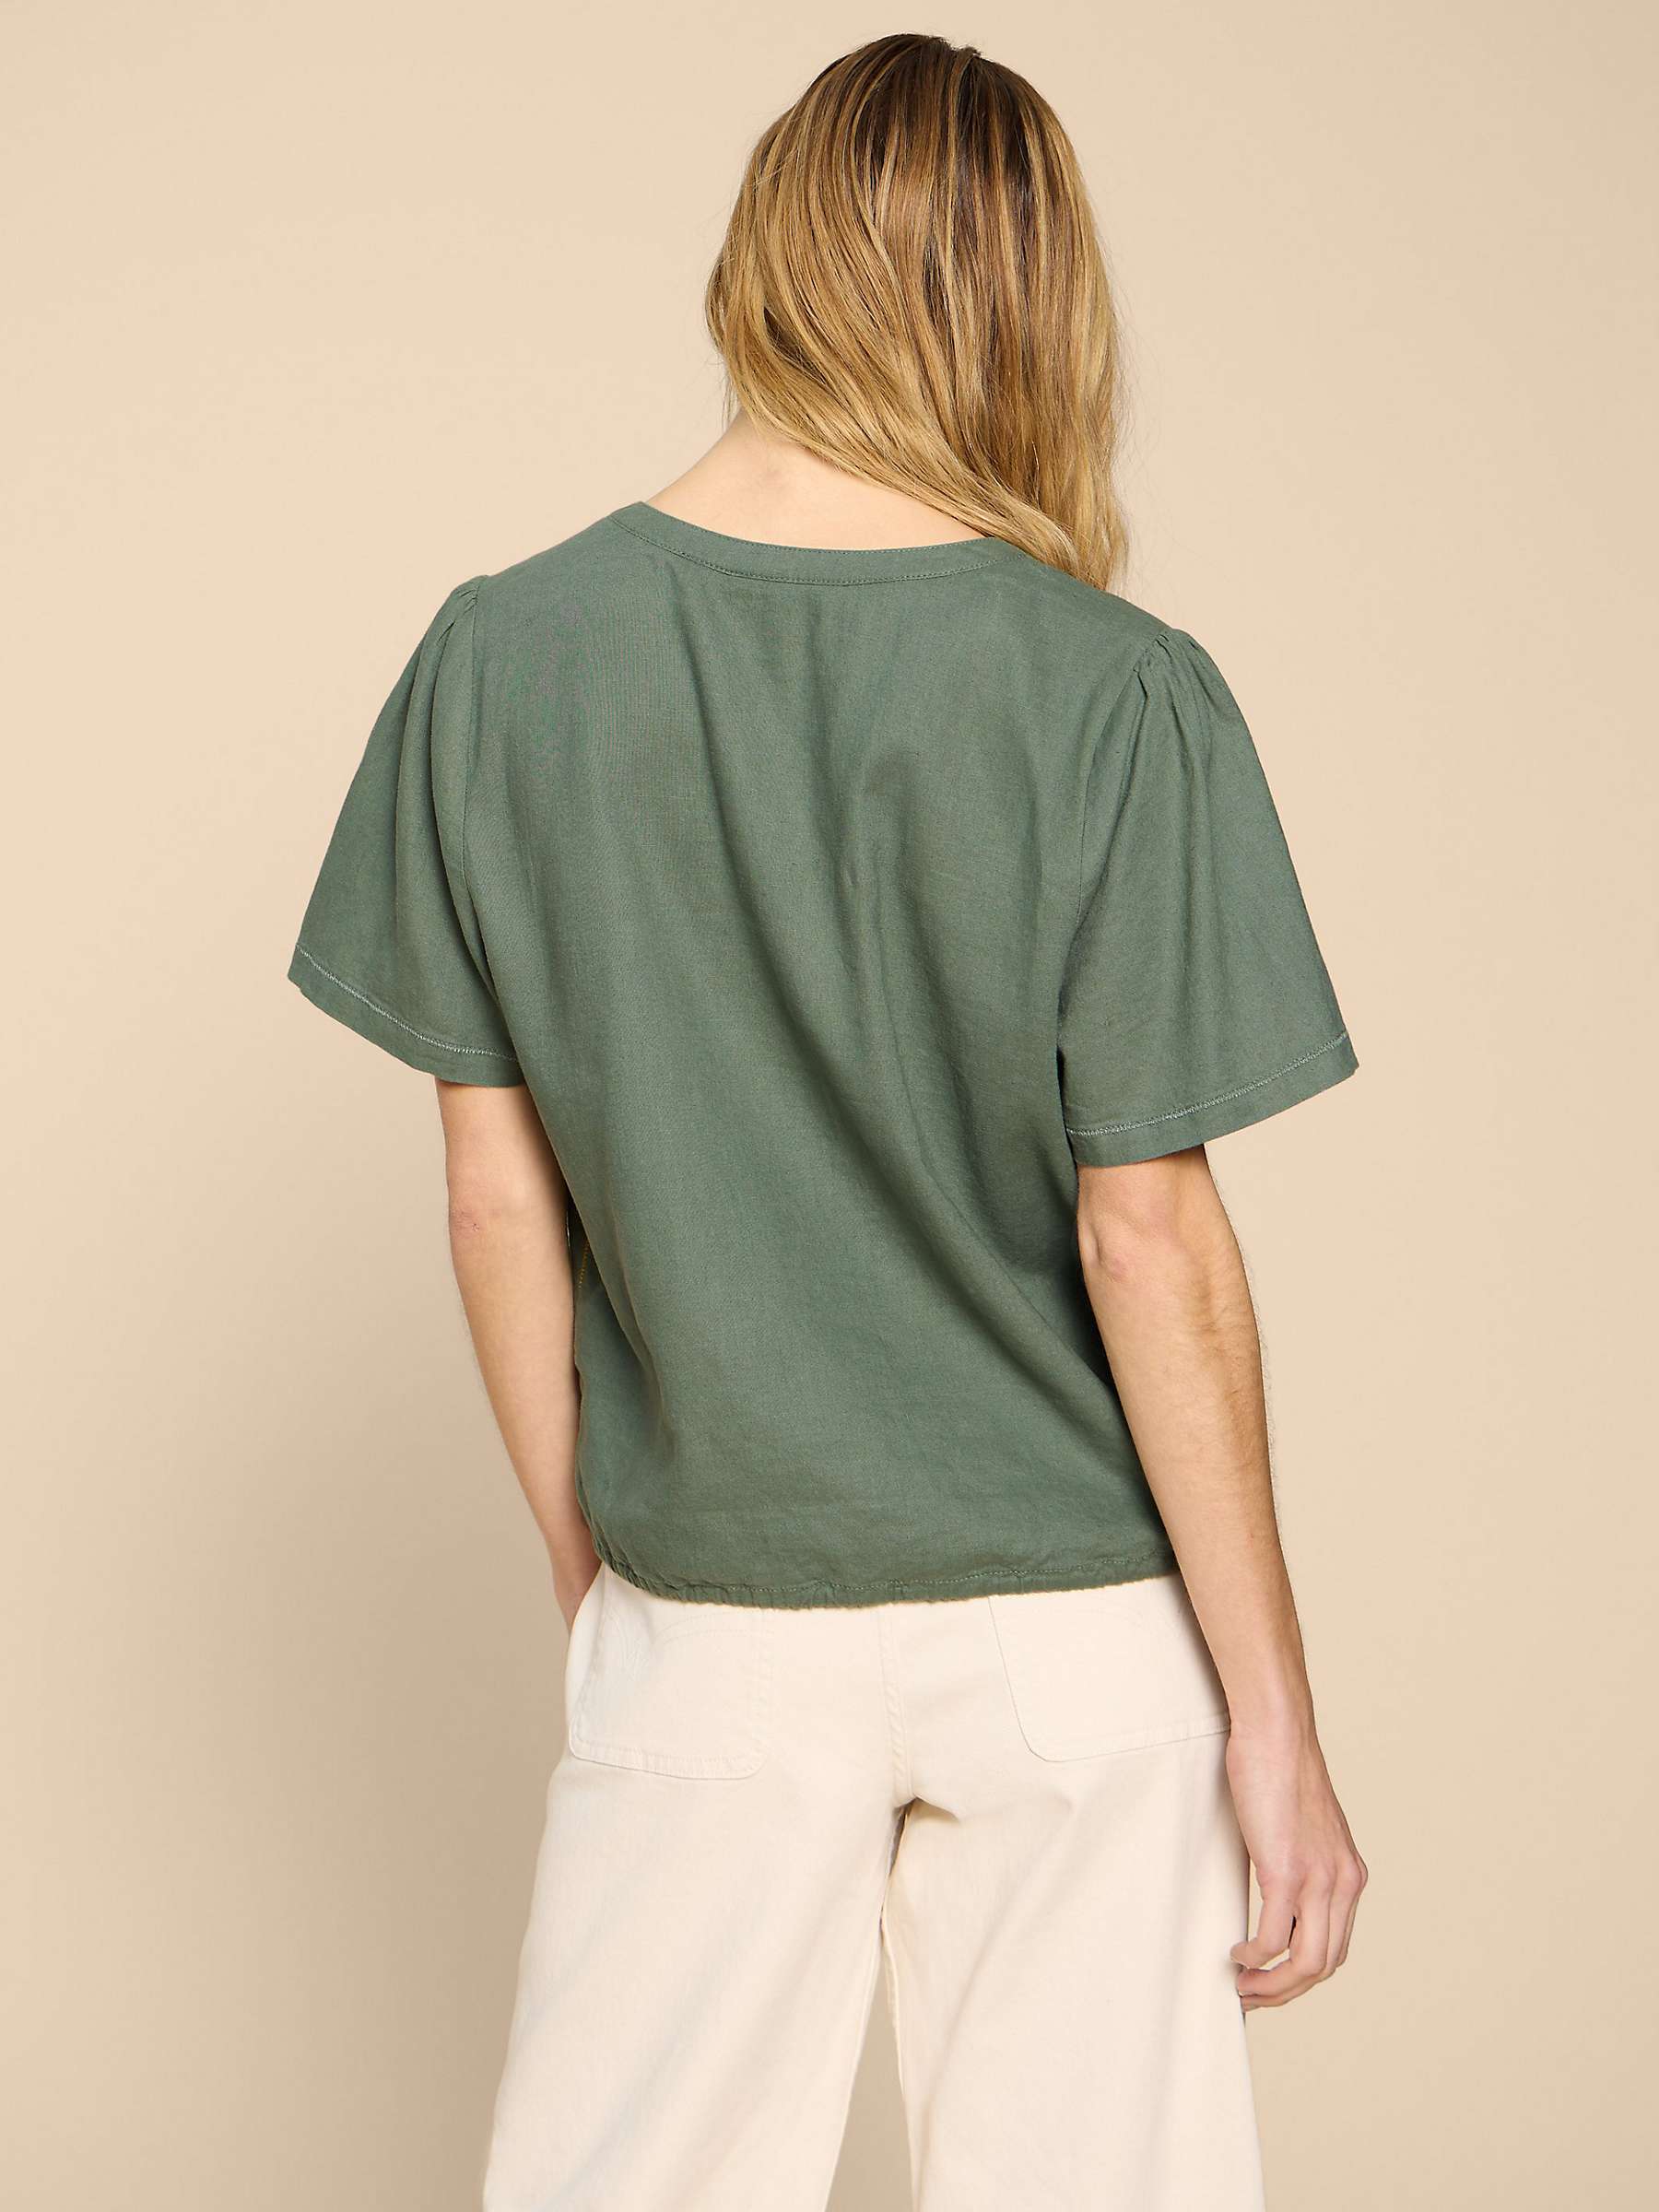 Buy White Stuff Ferne Linen Blend Shirt, Khaki Online at johnlewis.com